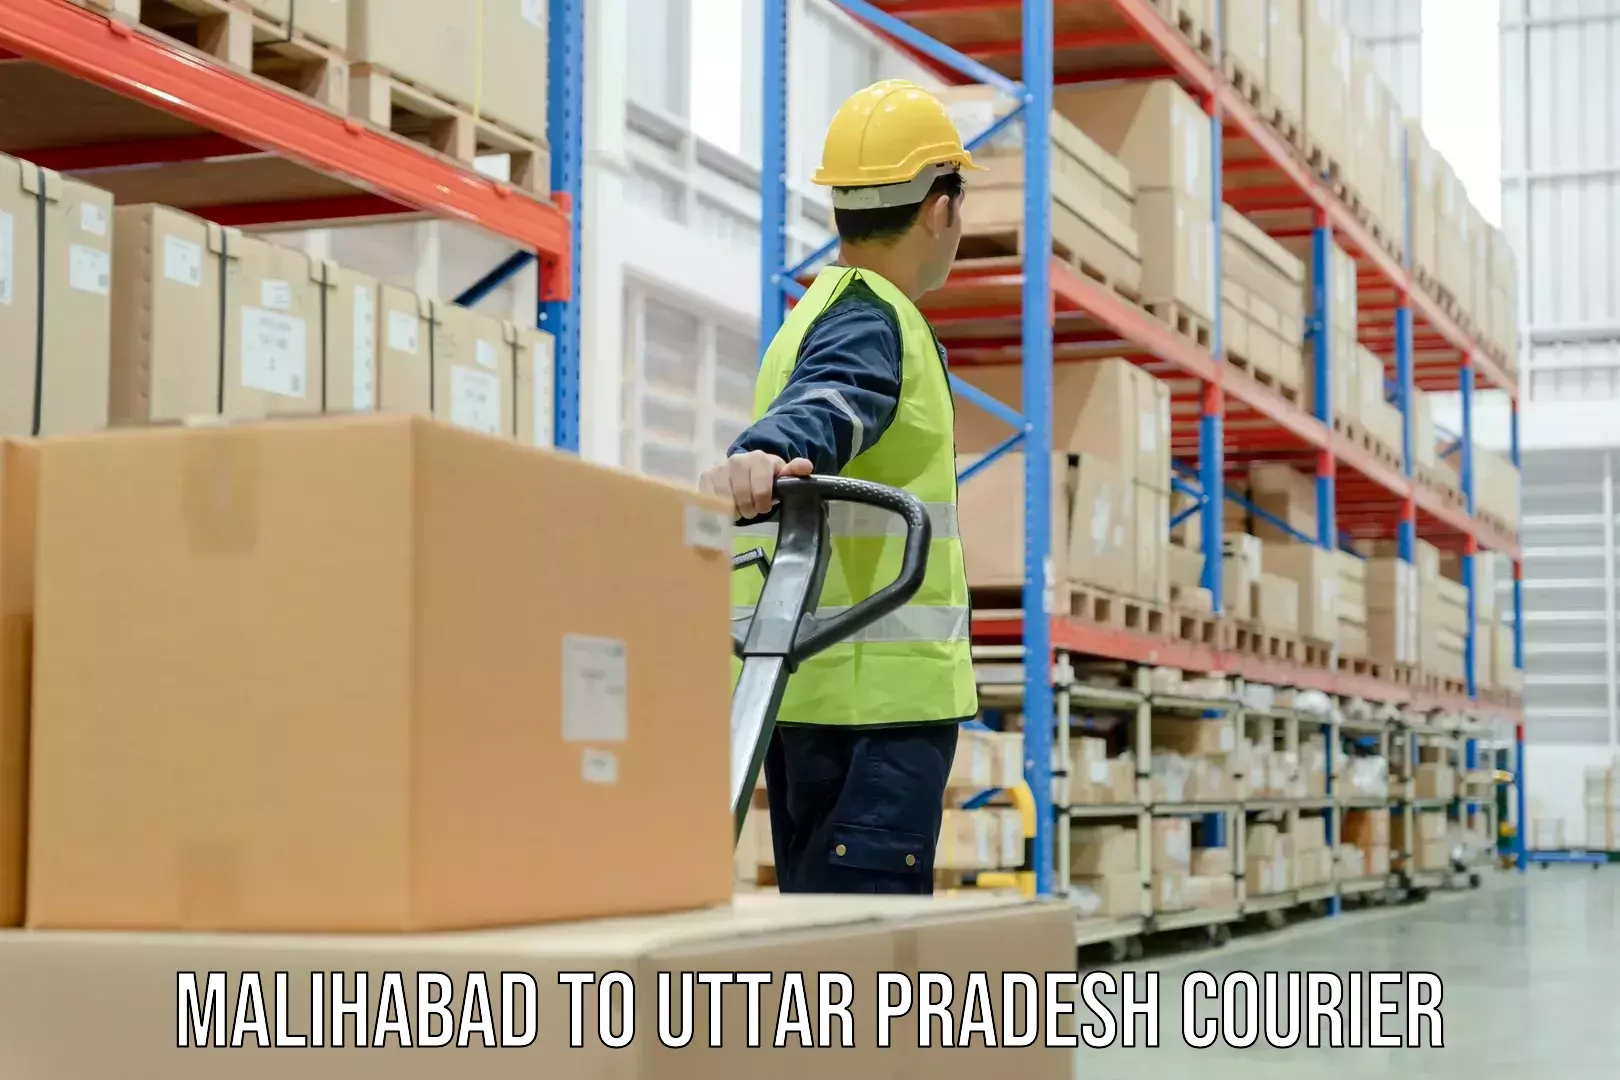 Door-to-door freight service Malihabad to Agra